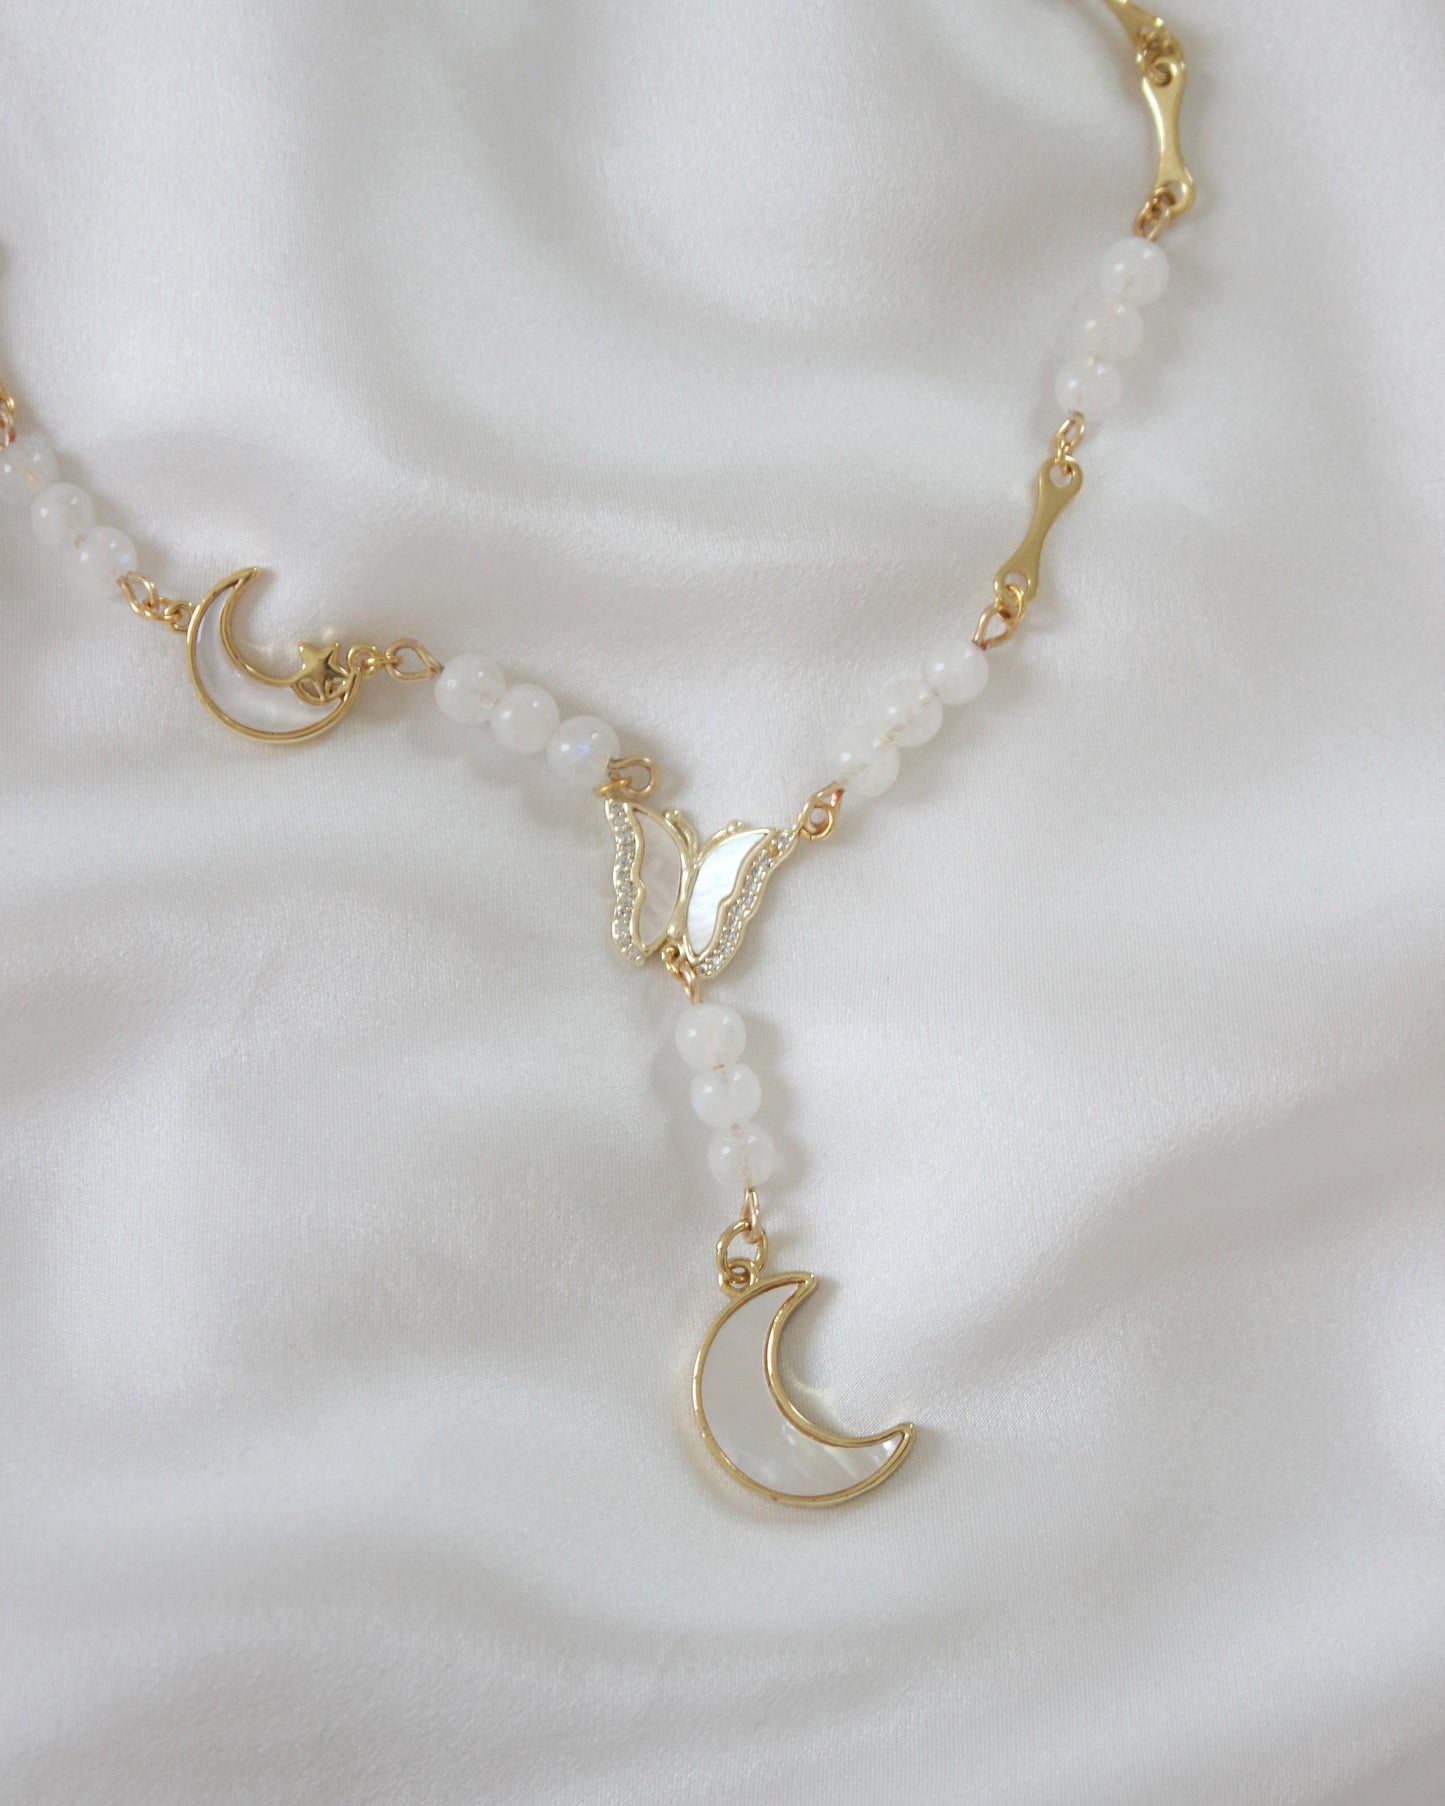 The Celeste Lariat Charm Necklace